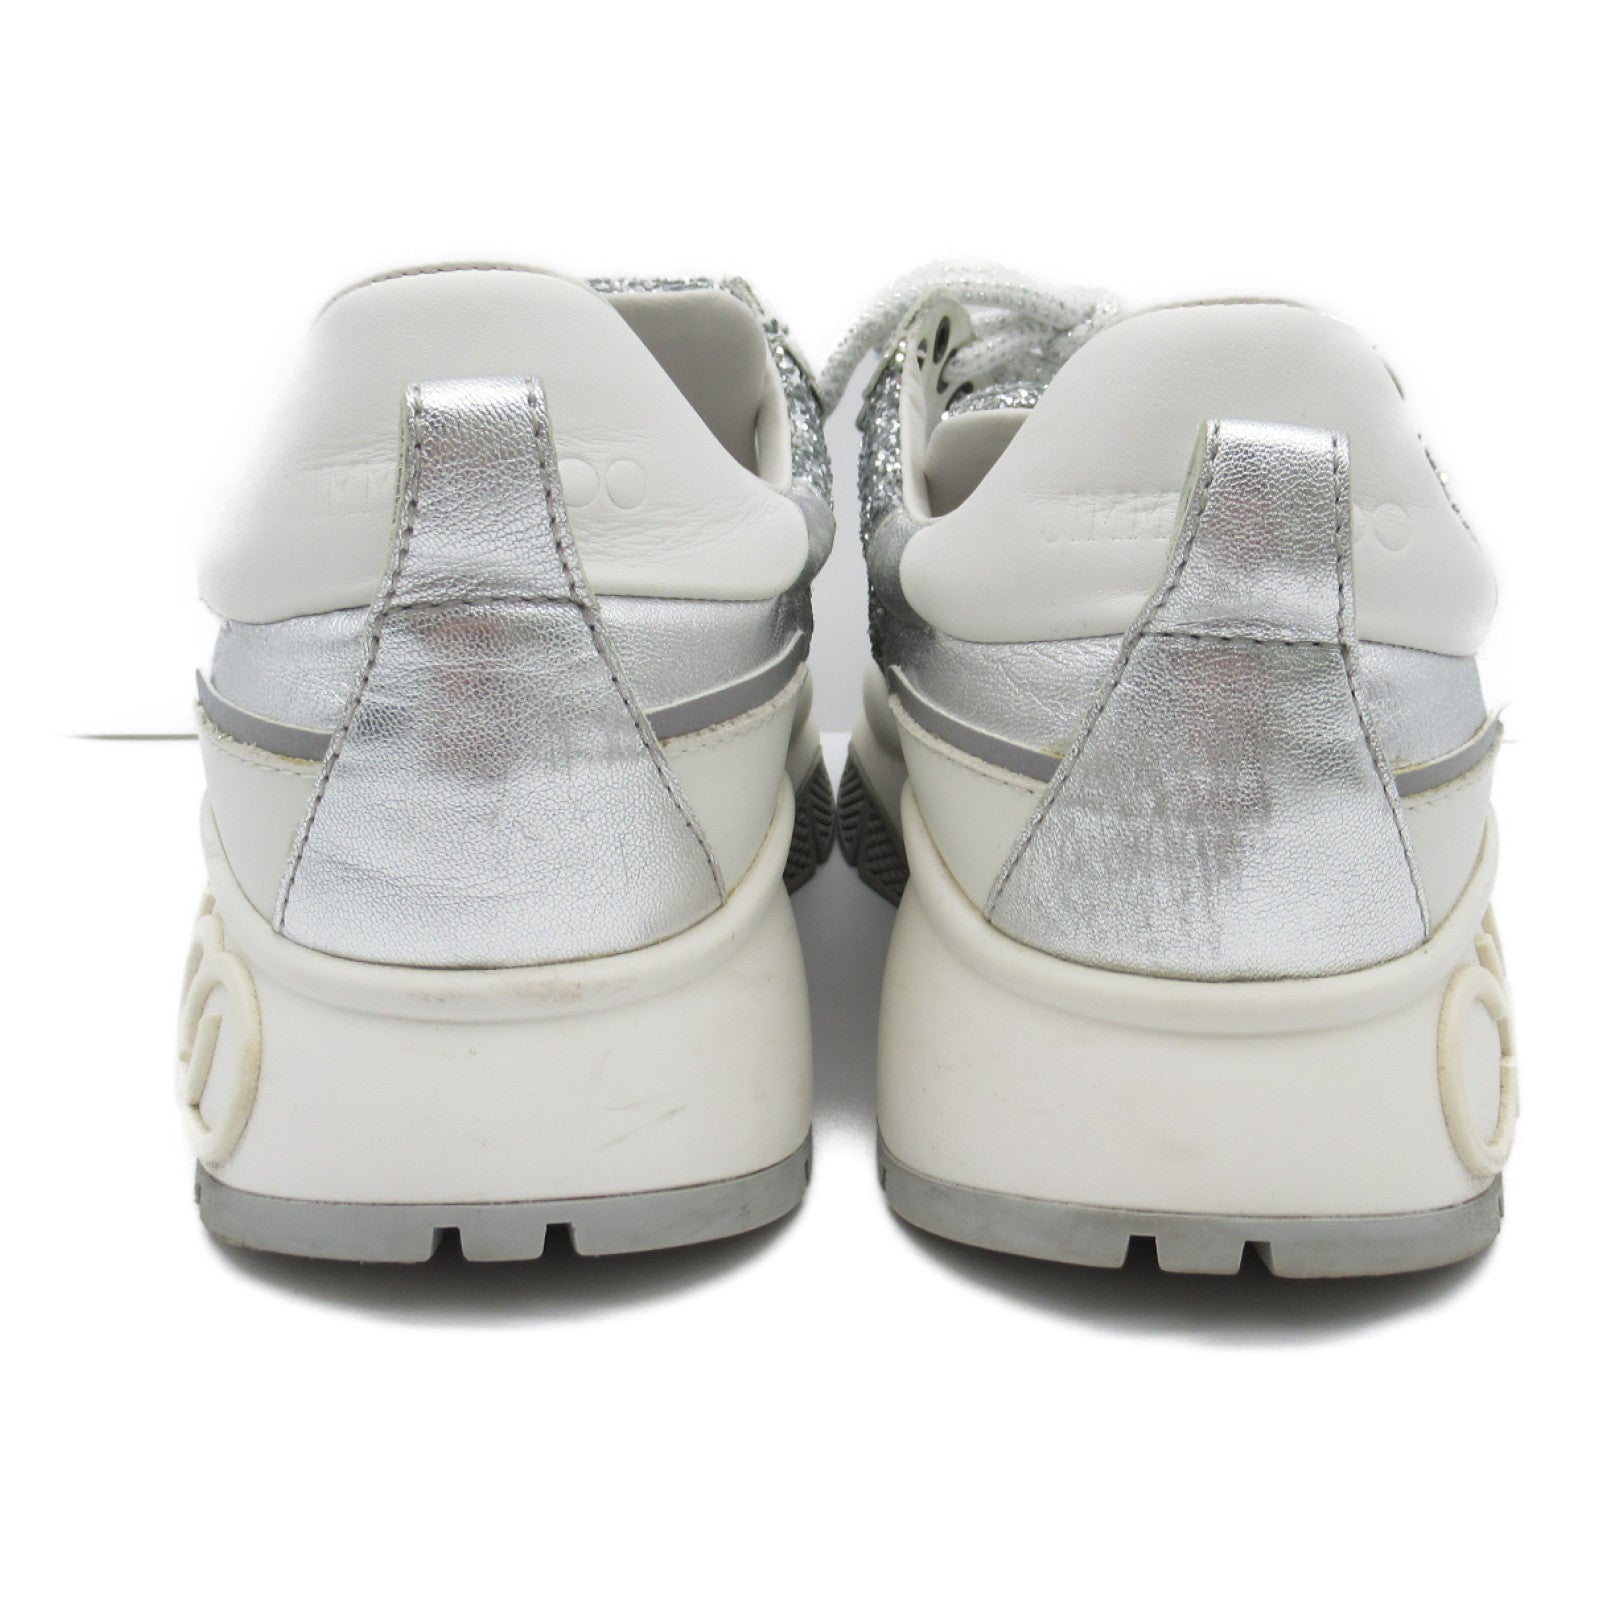 JIMMY CHOO Sneaker Shoes  Leather Women's Silver